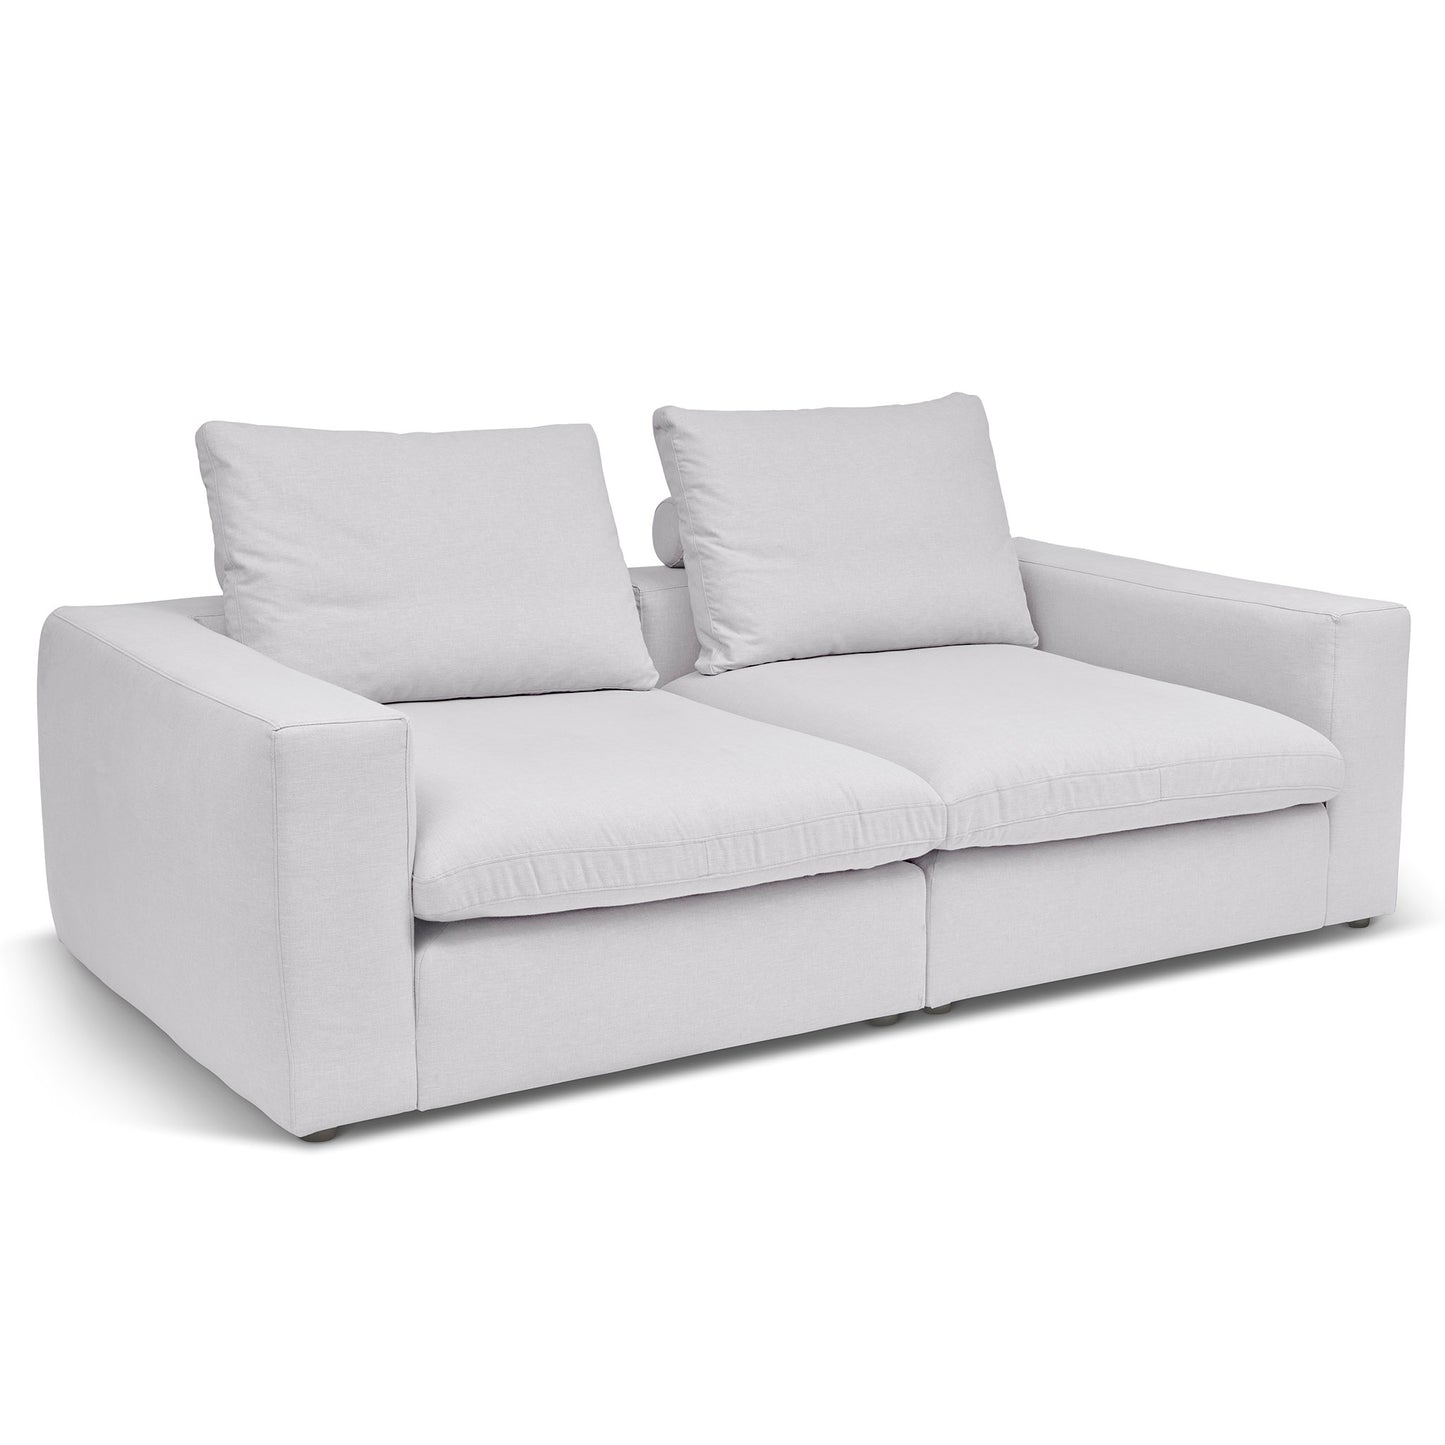 Extra djup 3-sits soffa i kritvit färg. Palazzo är en byggbar modulsoffa